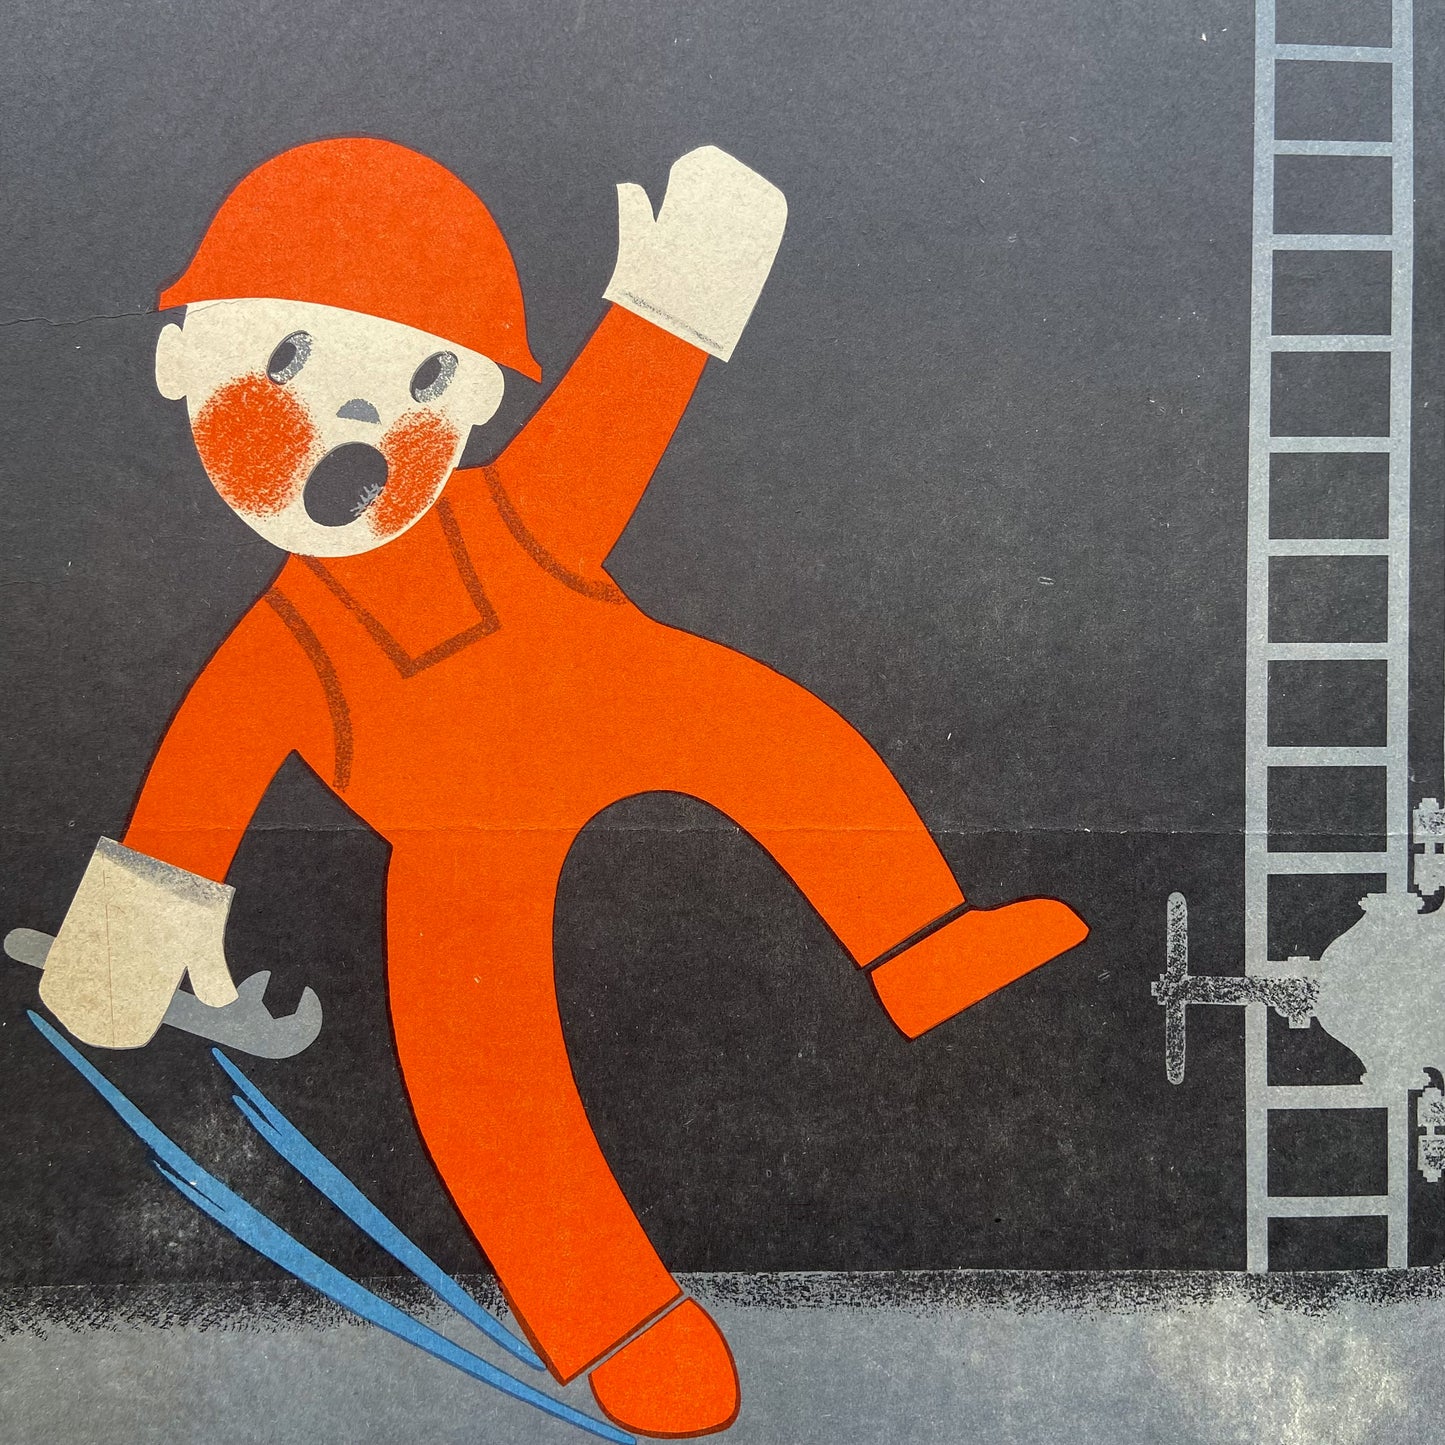 1984 Soviet Work Safety Poster #P1168 - 17" x 23"